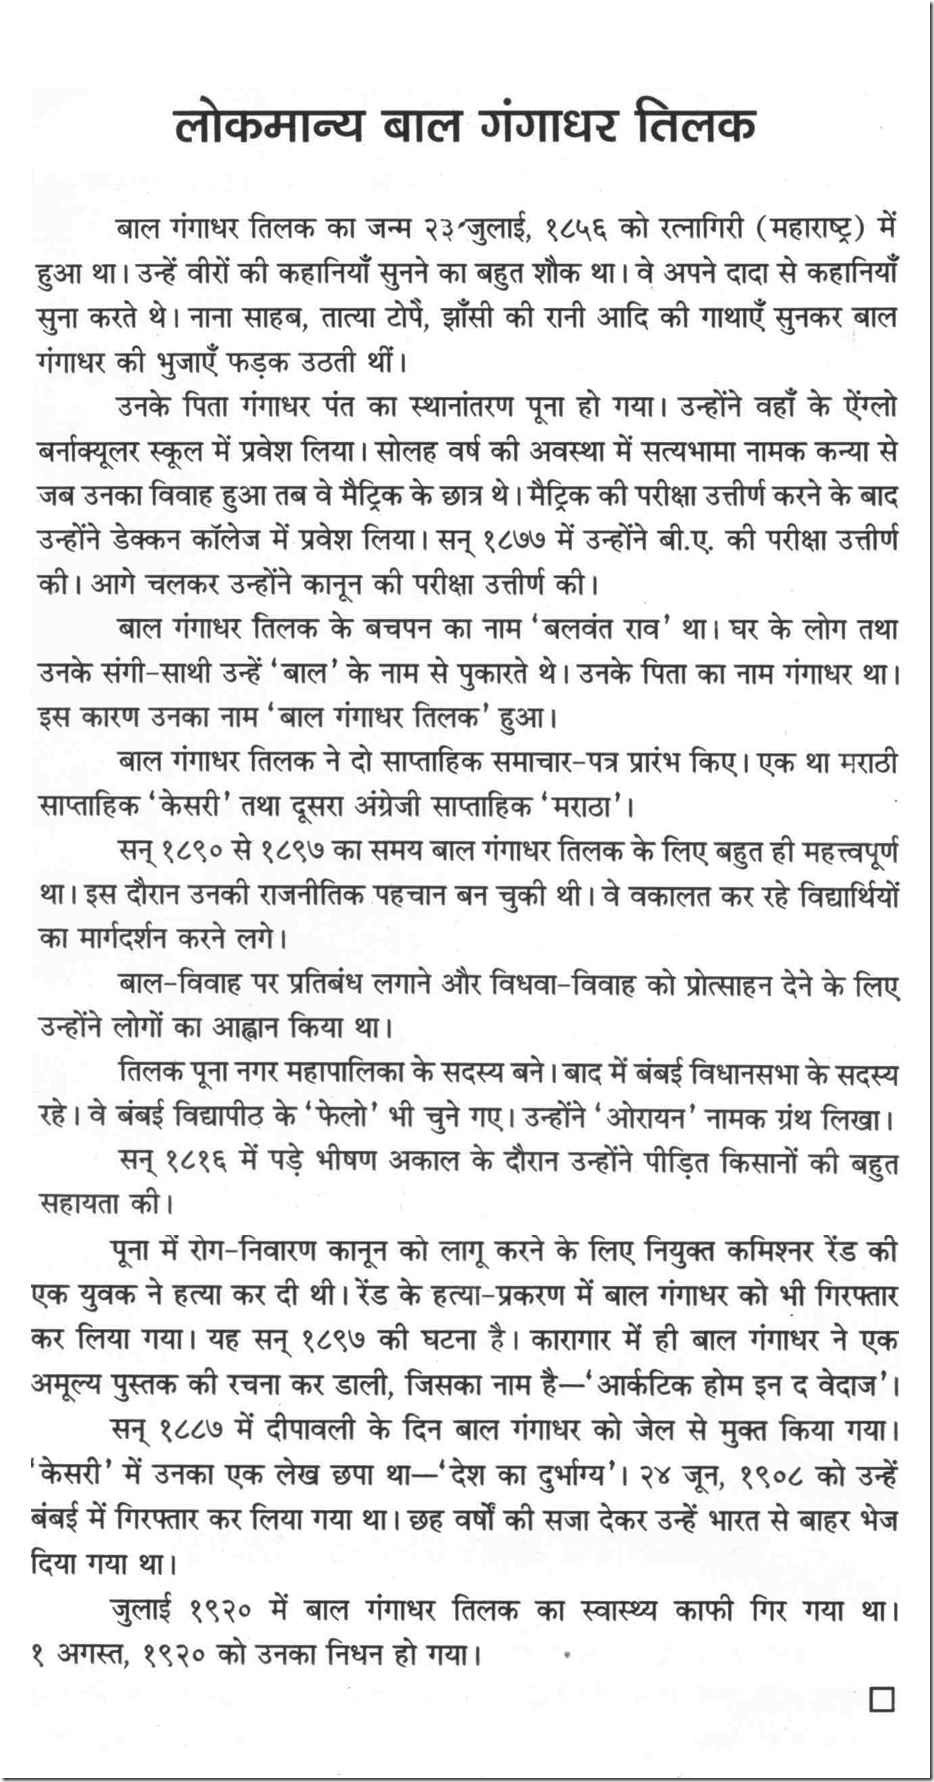 Sanskrit language essay mahatma gandhi